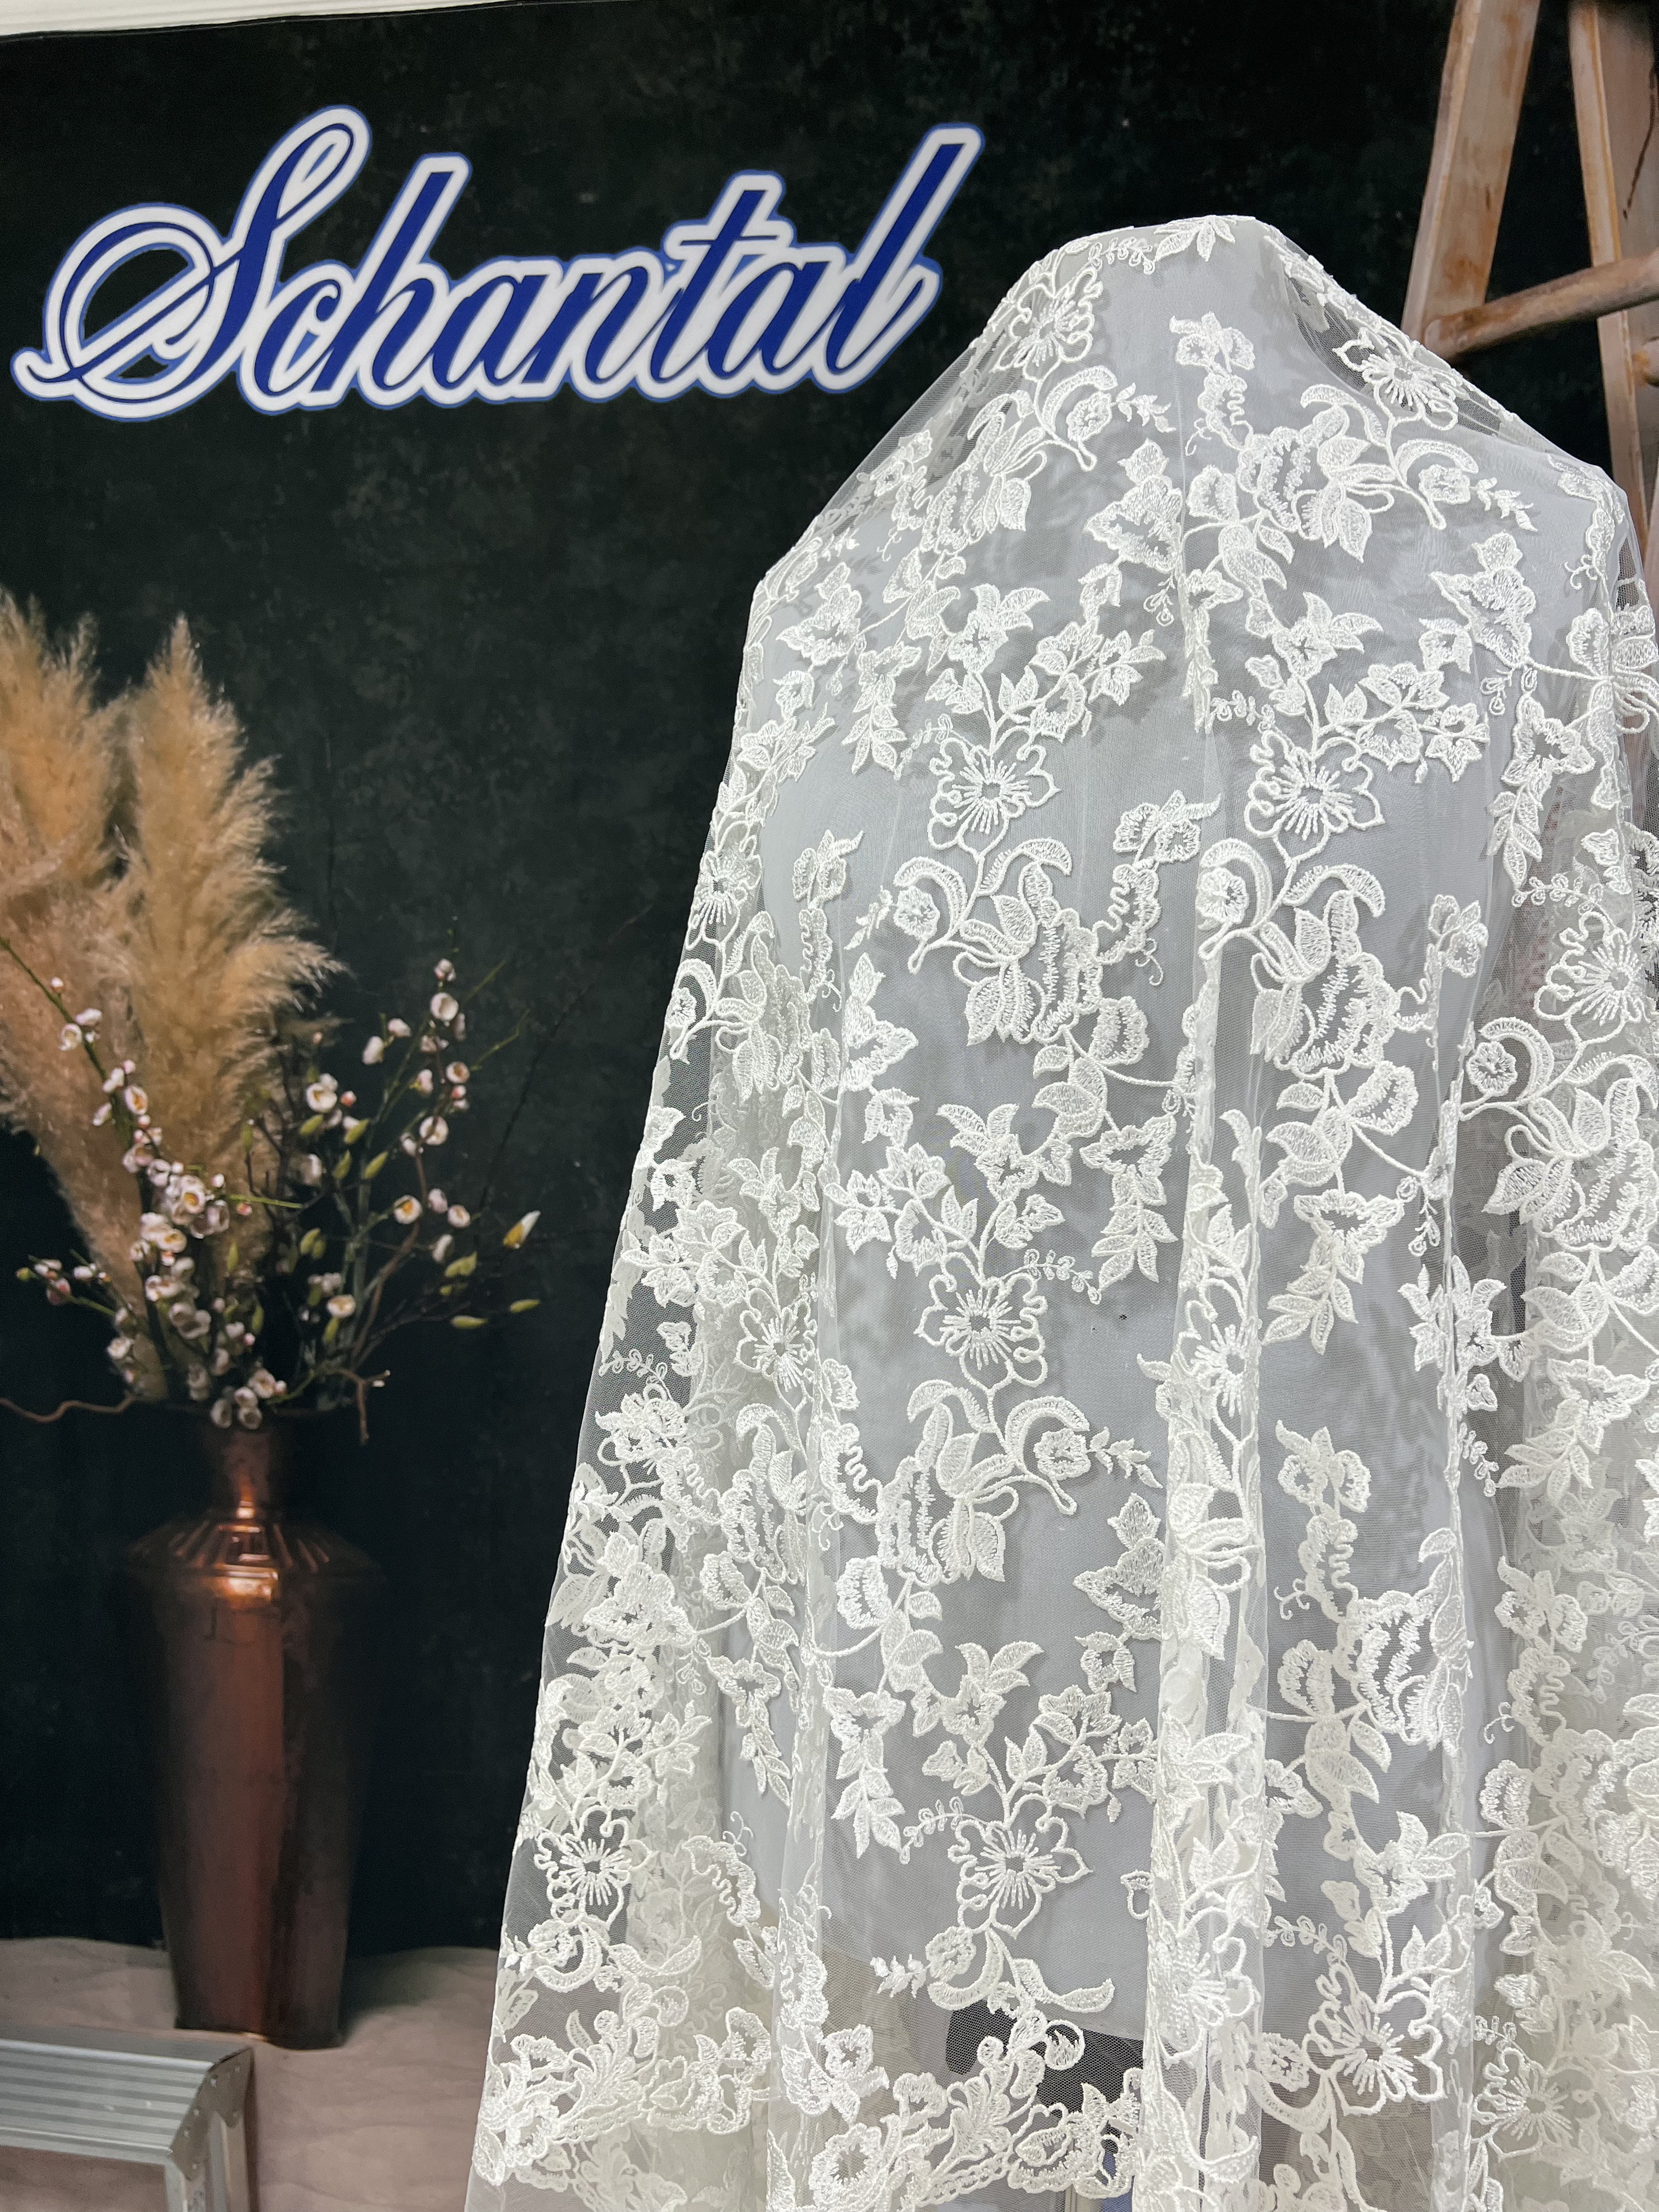 Schantal Brautkleid aus der Kollektion „Schatz“, Modell A - 53 iv. Foto 6